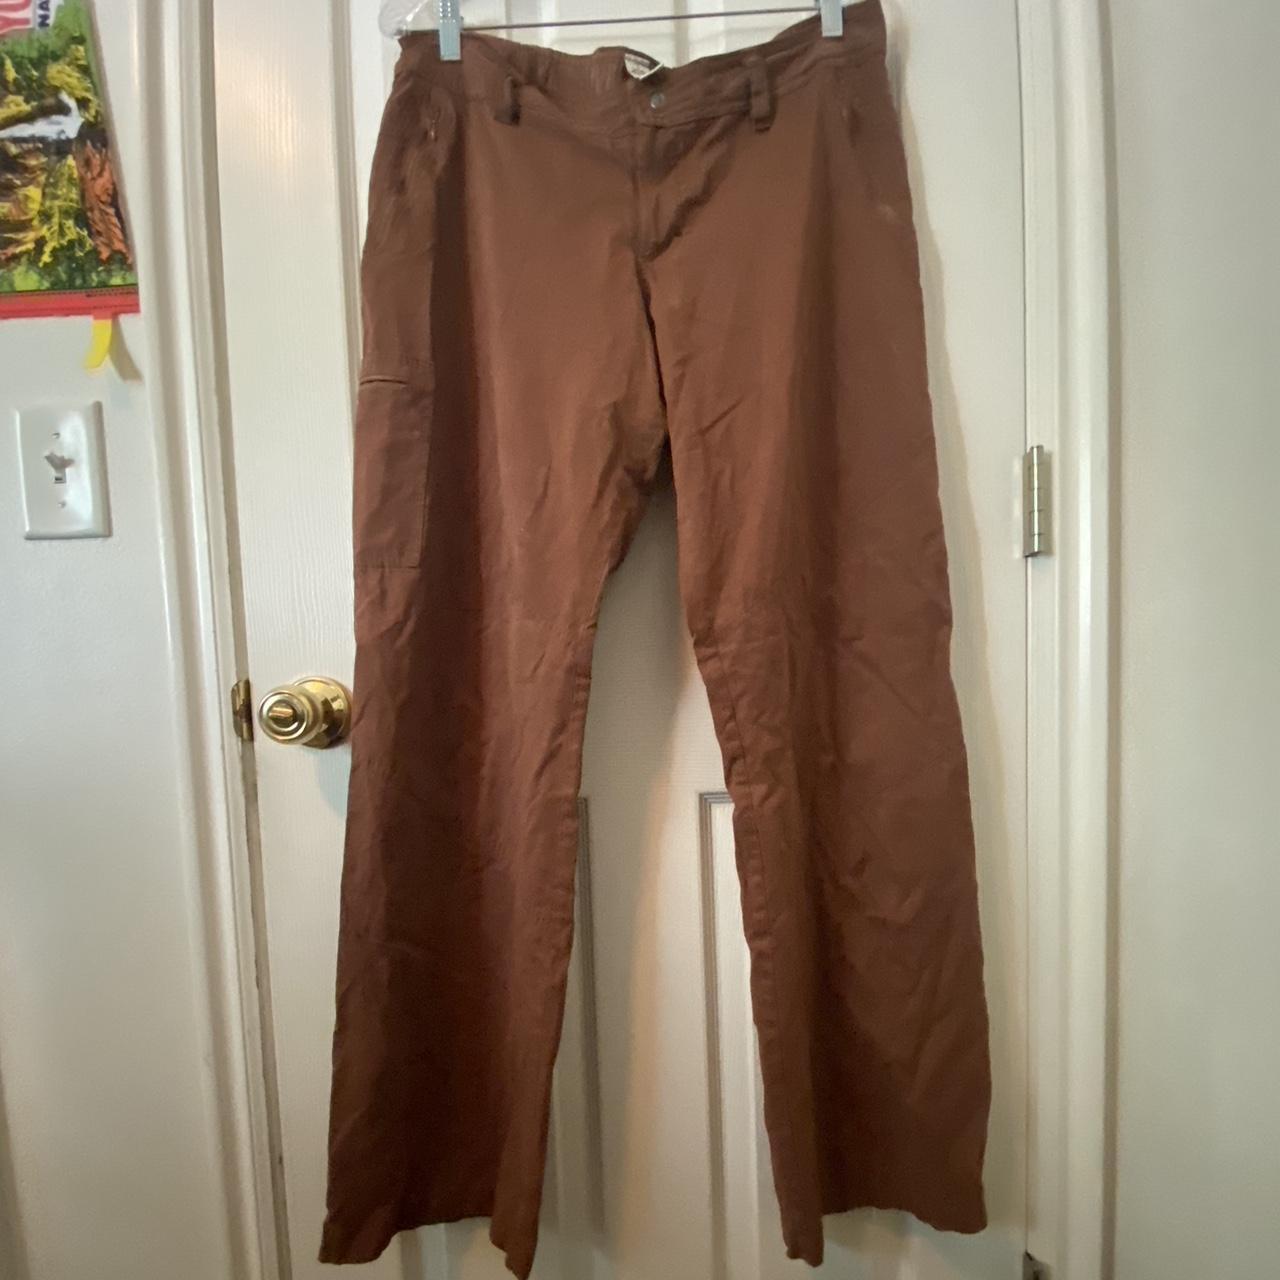 brown prana hiking pants - Depop